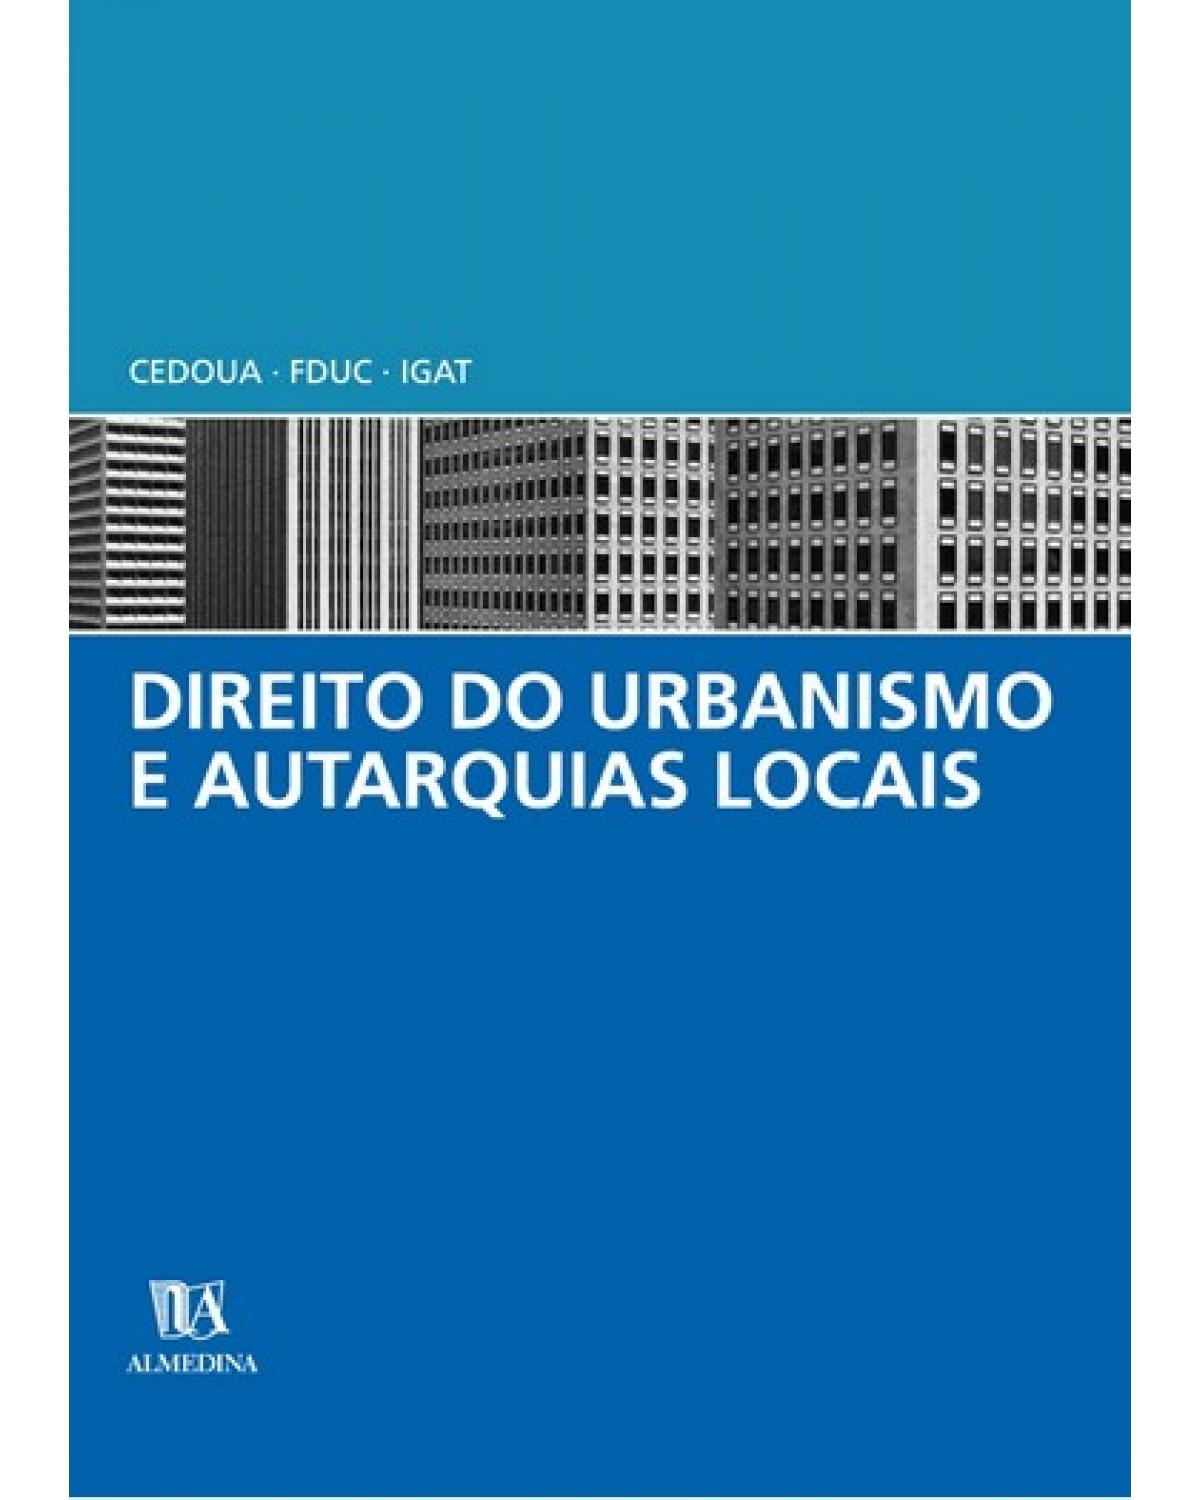 Direito do urbanismo e autarquias locais - 1ª Edição | 2005